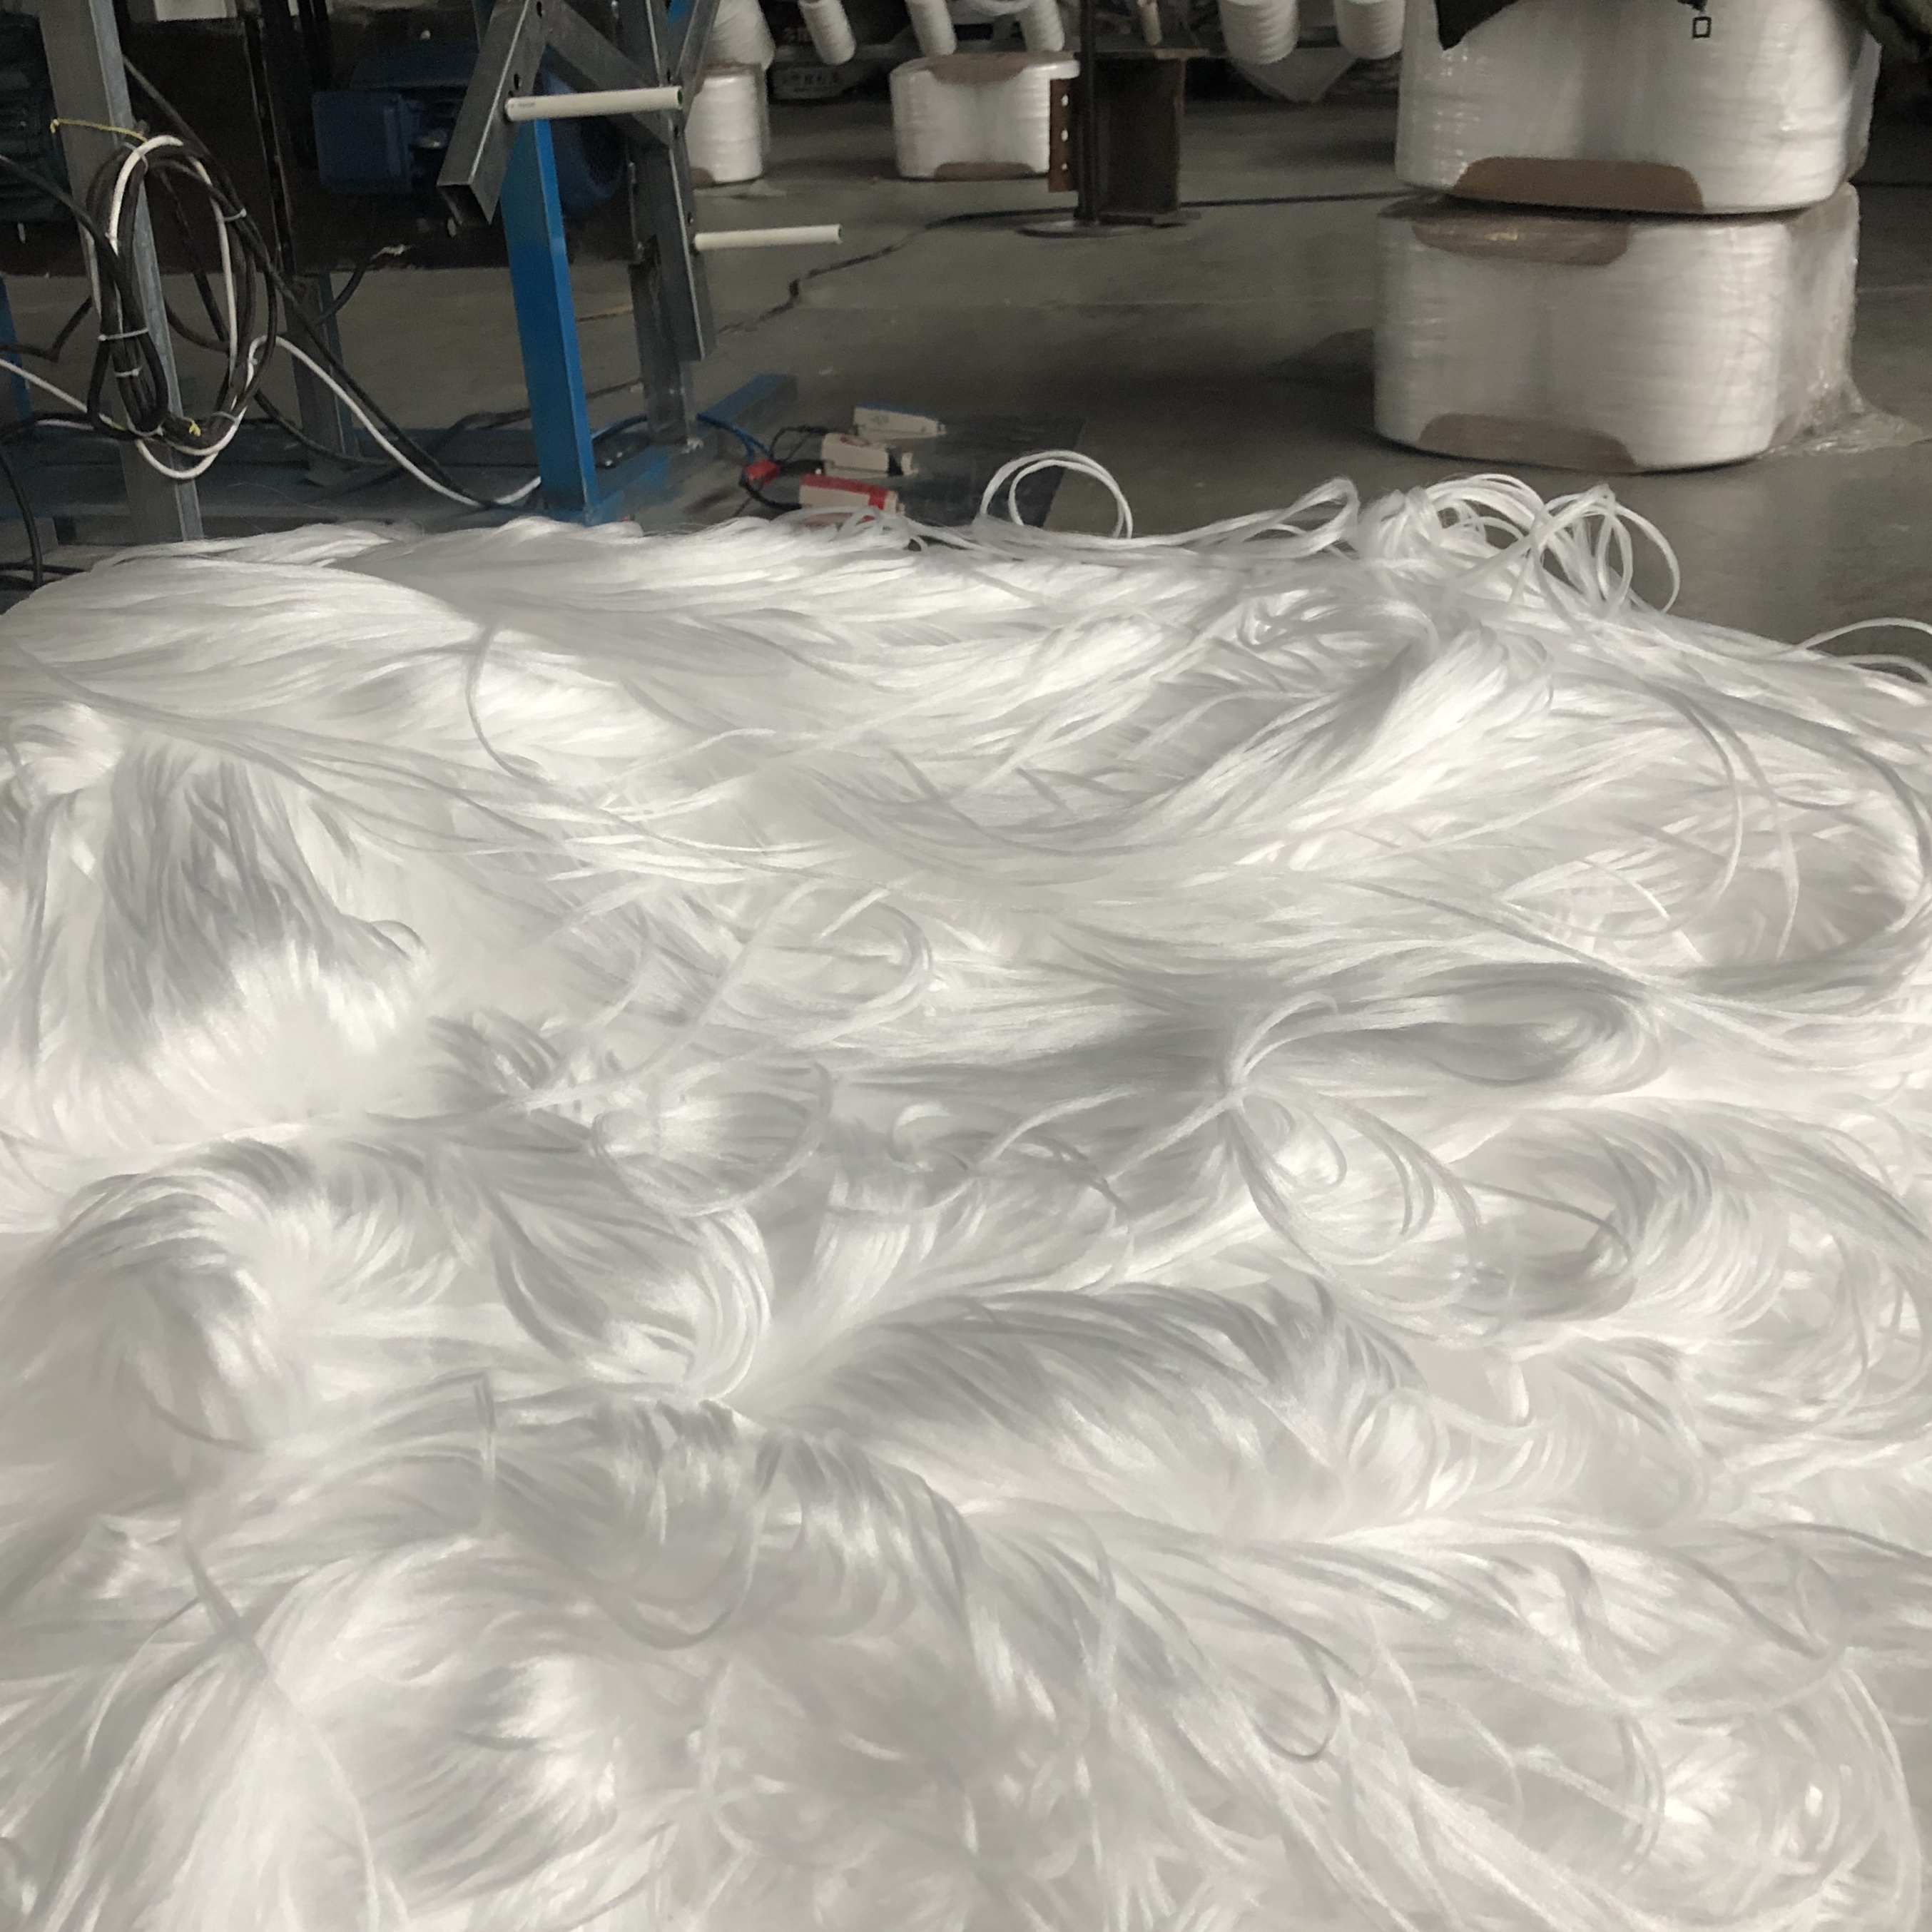 郑州市纤维束填料厂家纤维束填料厂家自产自销 河南纤维束一手供应商 纤维束批发价